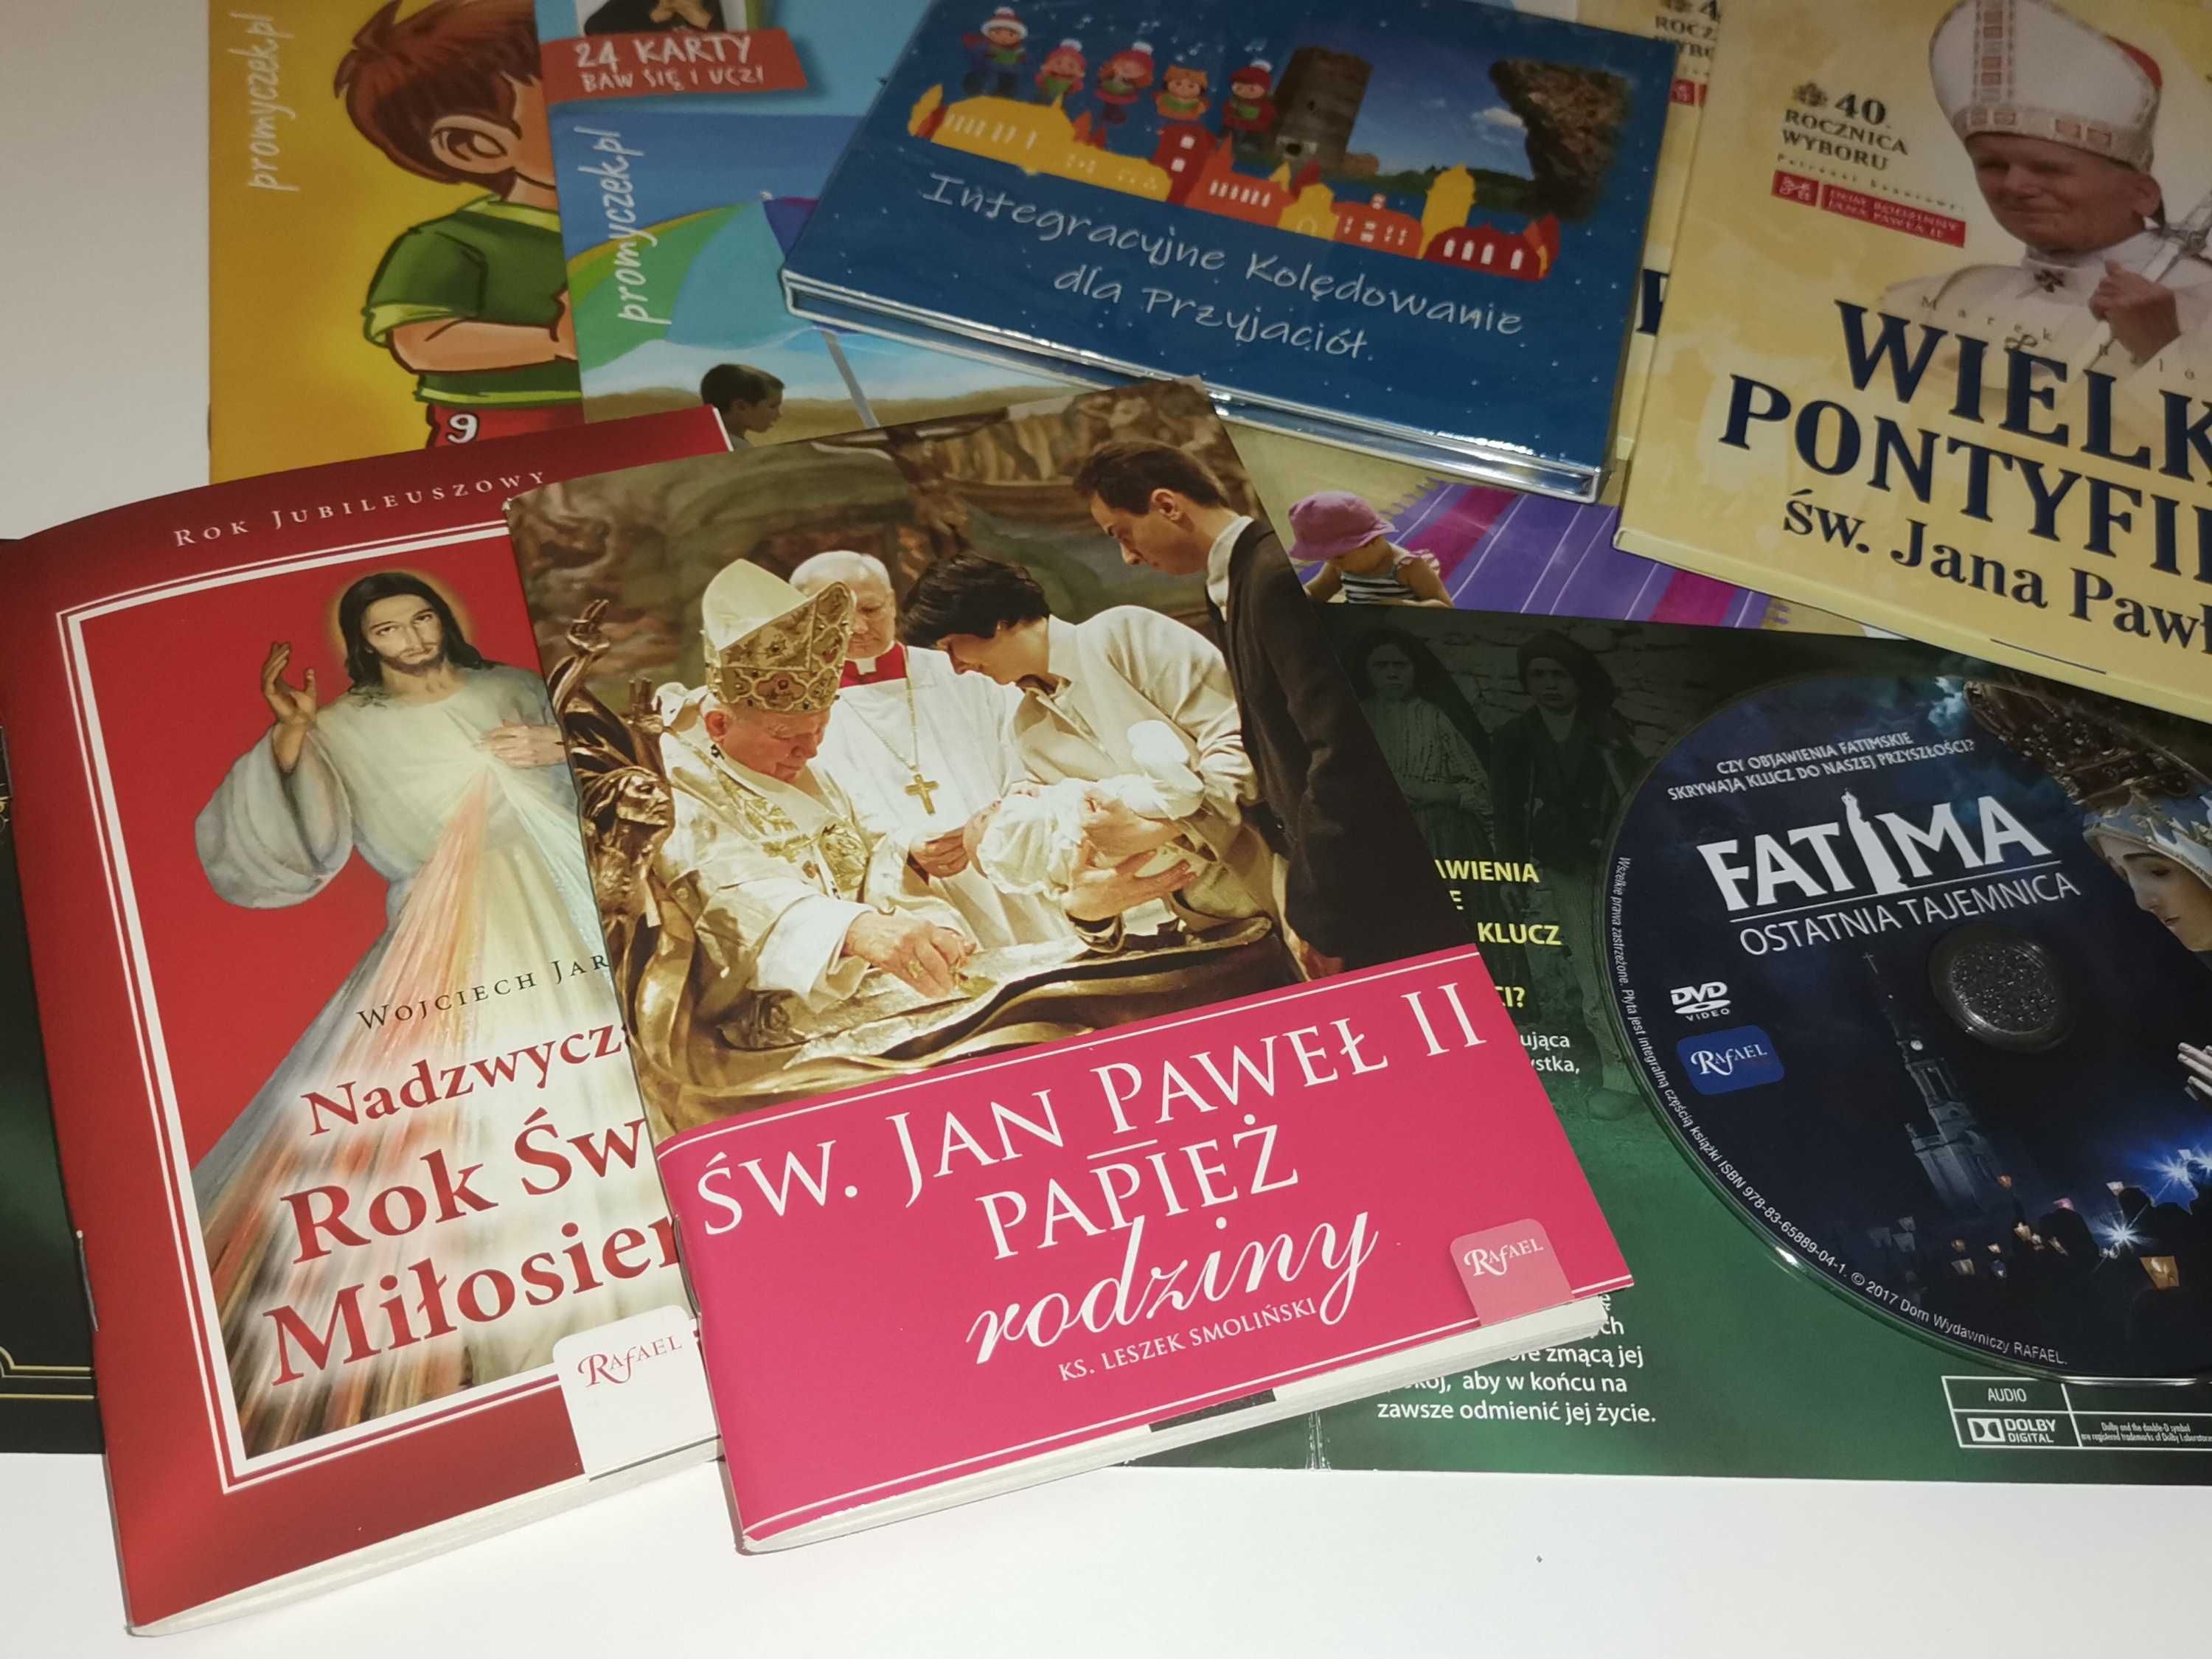 Zestaw DEWOCJONALIÓW religia kościół - książki, płyty CD, film, muzyka